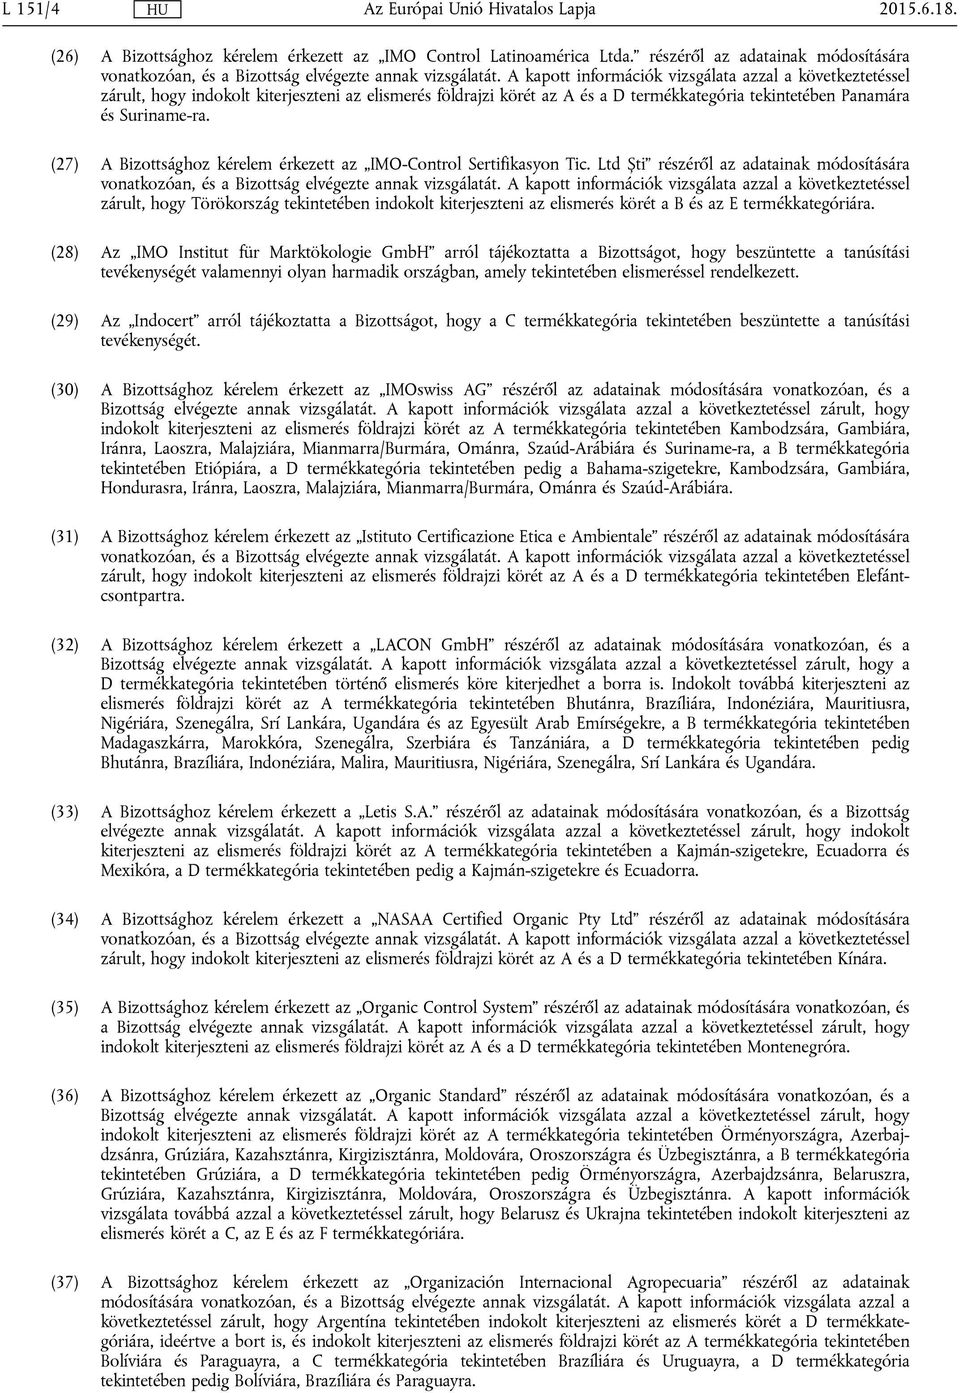 (27) A Bizottsághoz kérelem érkezett az IMO-Control Sertifikasyon Tic. Ltd Ști részéről az adatainak módosítására vonatkozóan, és a Bizottság elvégezte annak vizsgálatát.